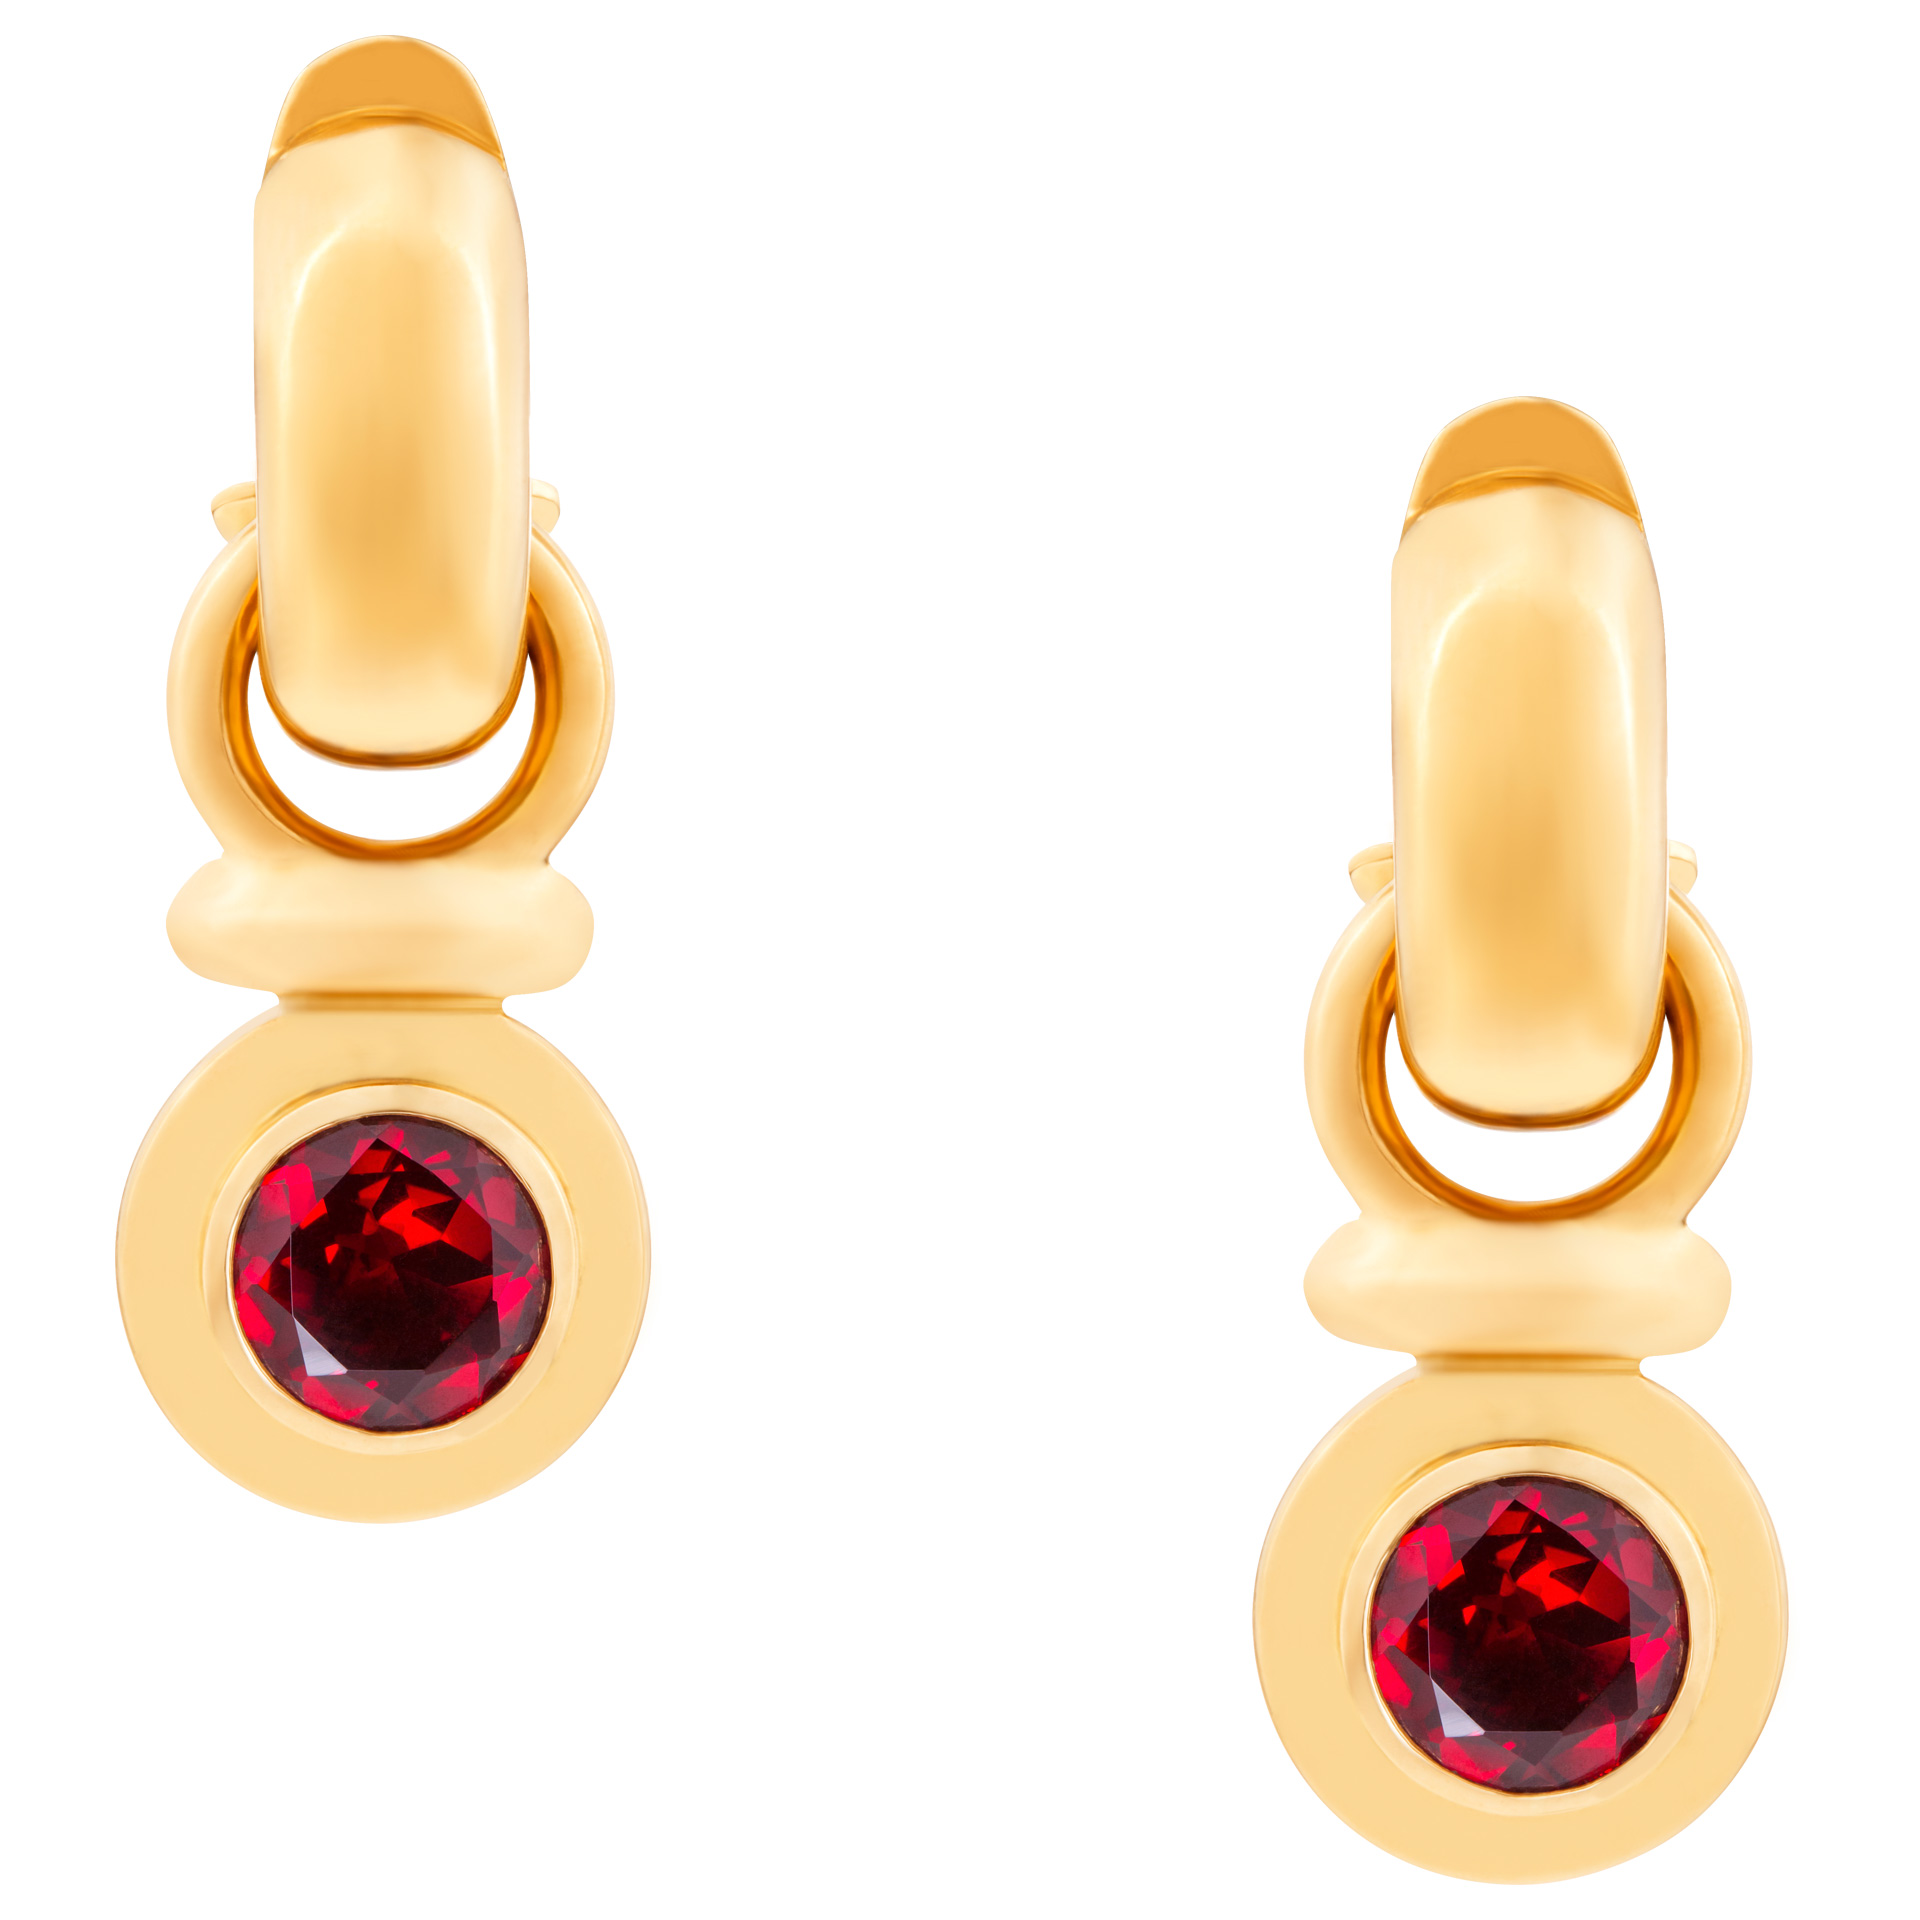 Elegant deep red garnet swivel earrings in 18k yellow gold